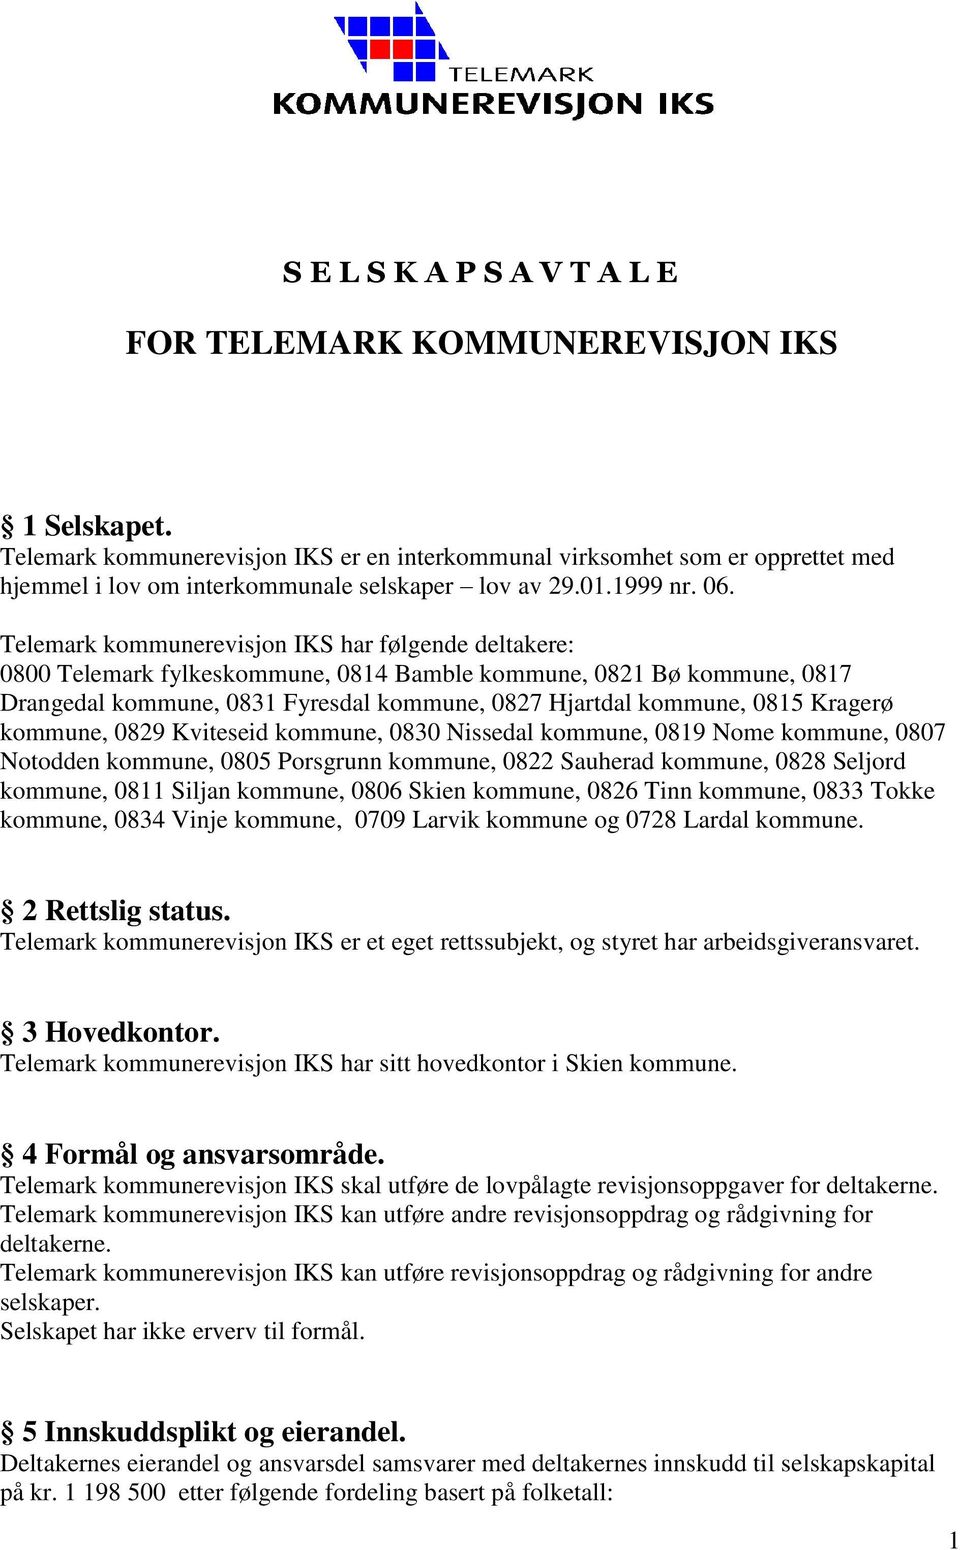 Telemark kommunerevisjon IKS har følgende deltakere: 0800 Telemark fylkeskommune, 0814 Bamble kommune, 0821 Bø kommune, 0817 Drangedal kommune, 0831 Fyresdal kommune, 0827 Hjartdal kommune, 0815